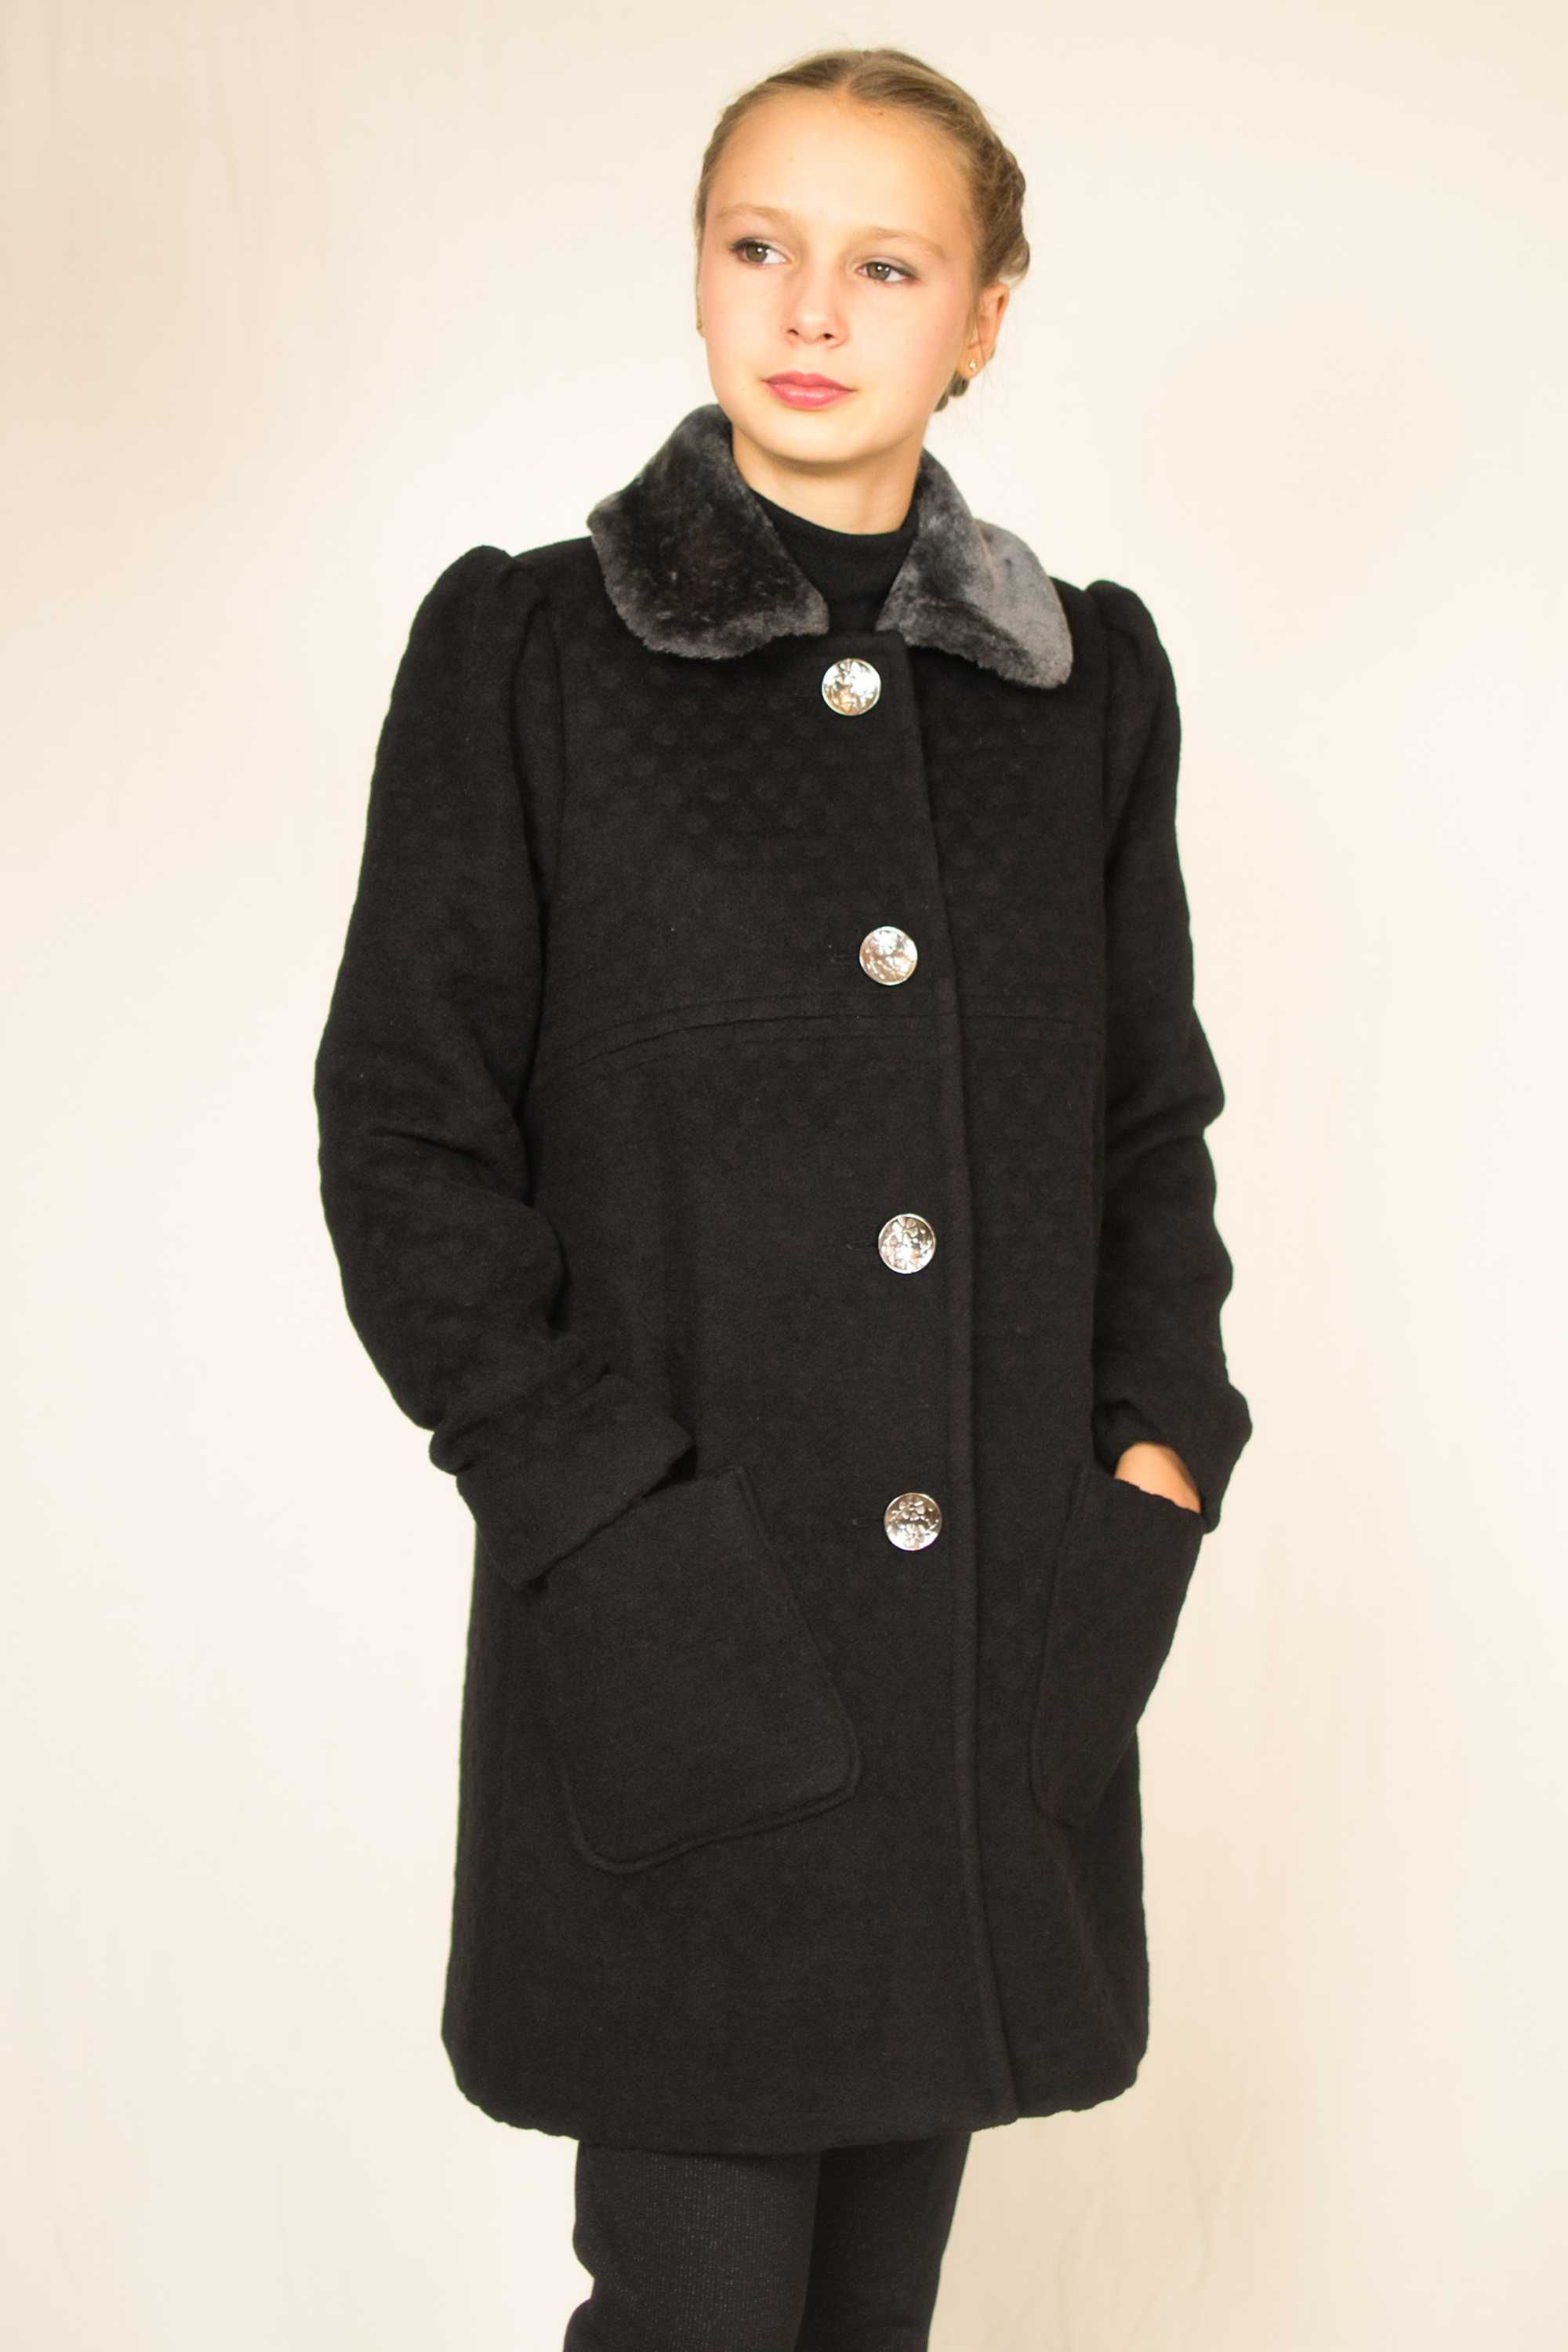 Пальто шерстяное серое (черное) с накладными карманами  128-152рр